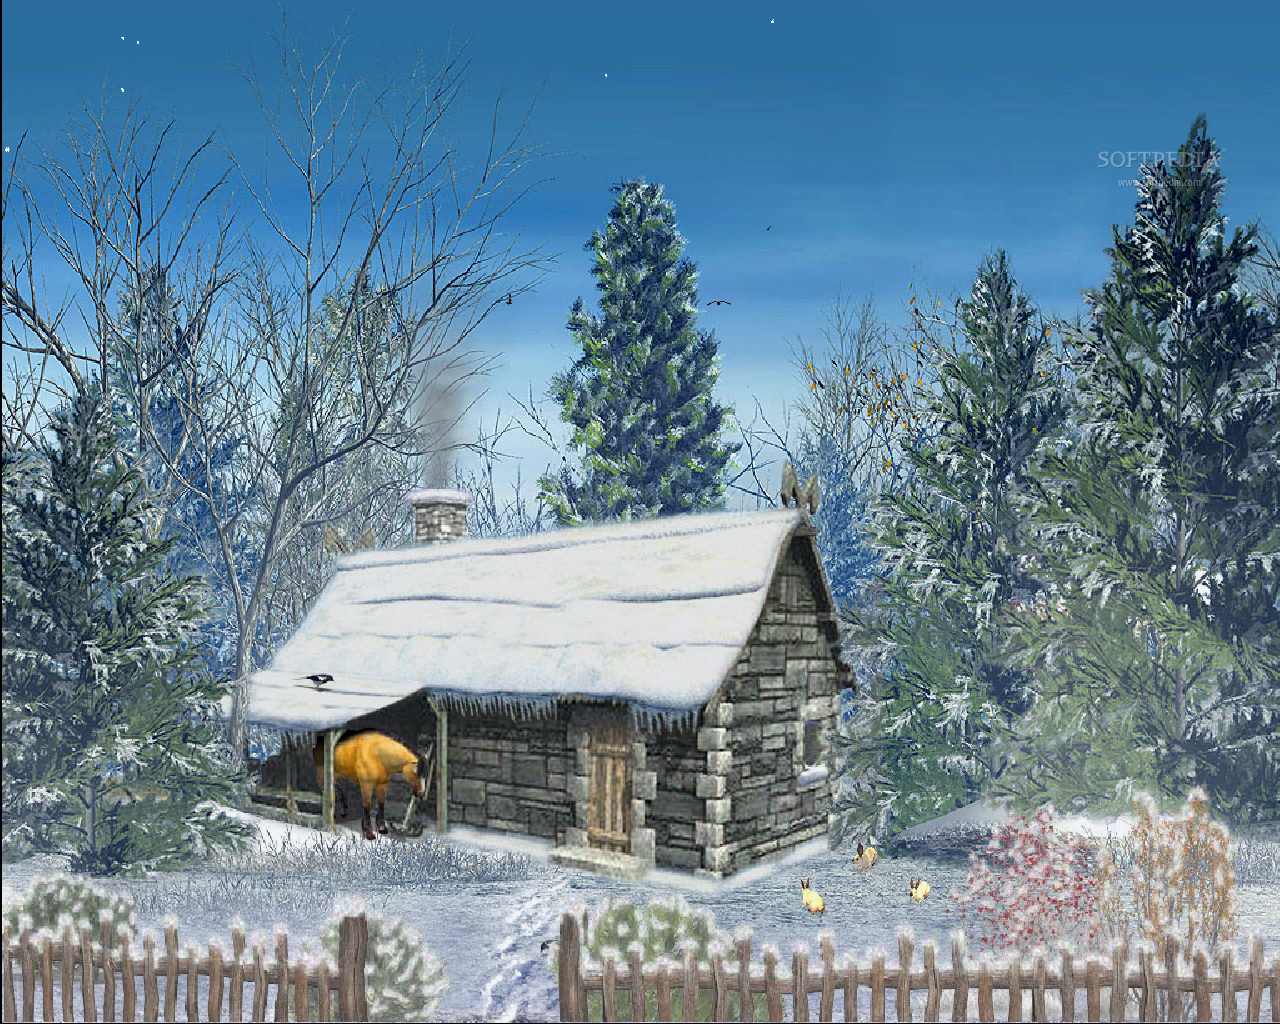 Snowy Wallpaper Scenes. Best free snowysnowing wallpaper, christmas winter 